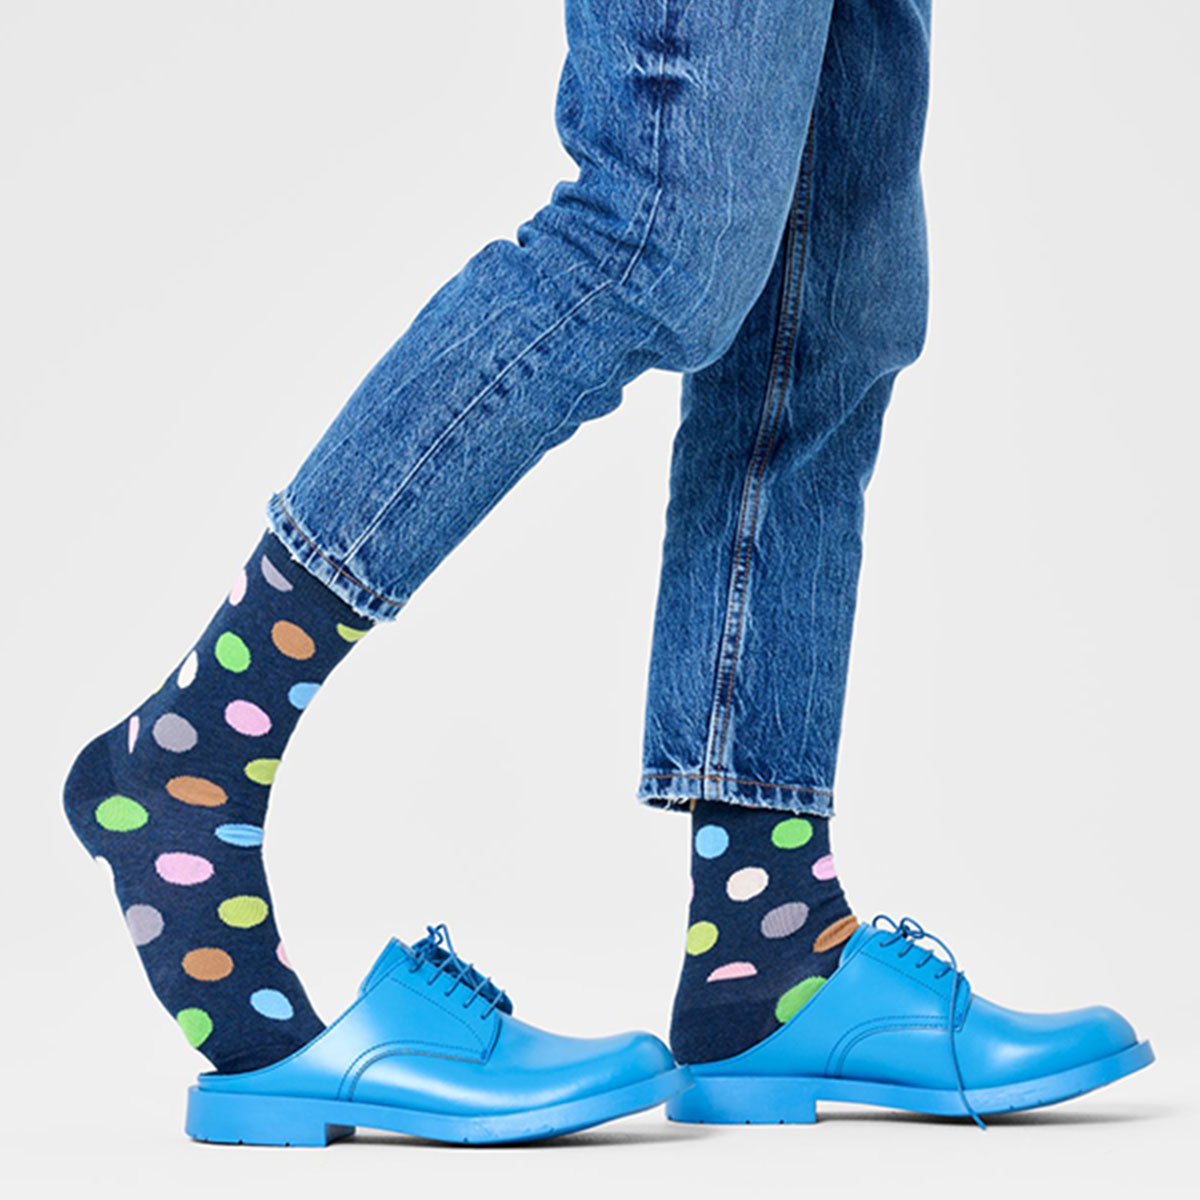 【24SS】Happy Socks ハッピーソックス Big Dot ( ビックドット ) ネイビー クルー丈 ソックス ユニセックス メンズ ＆ レディス 10240081